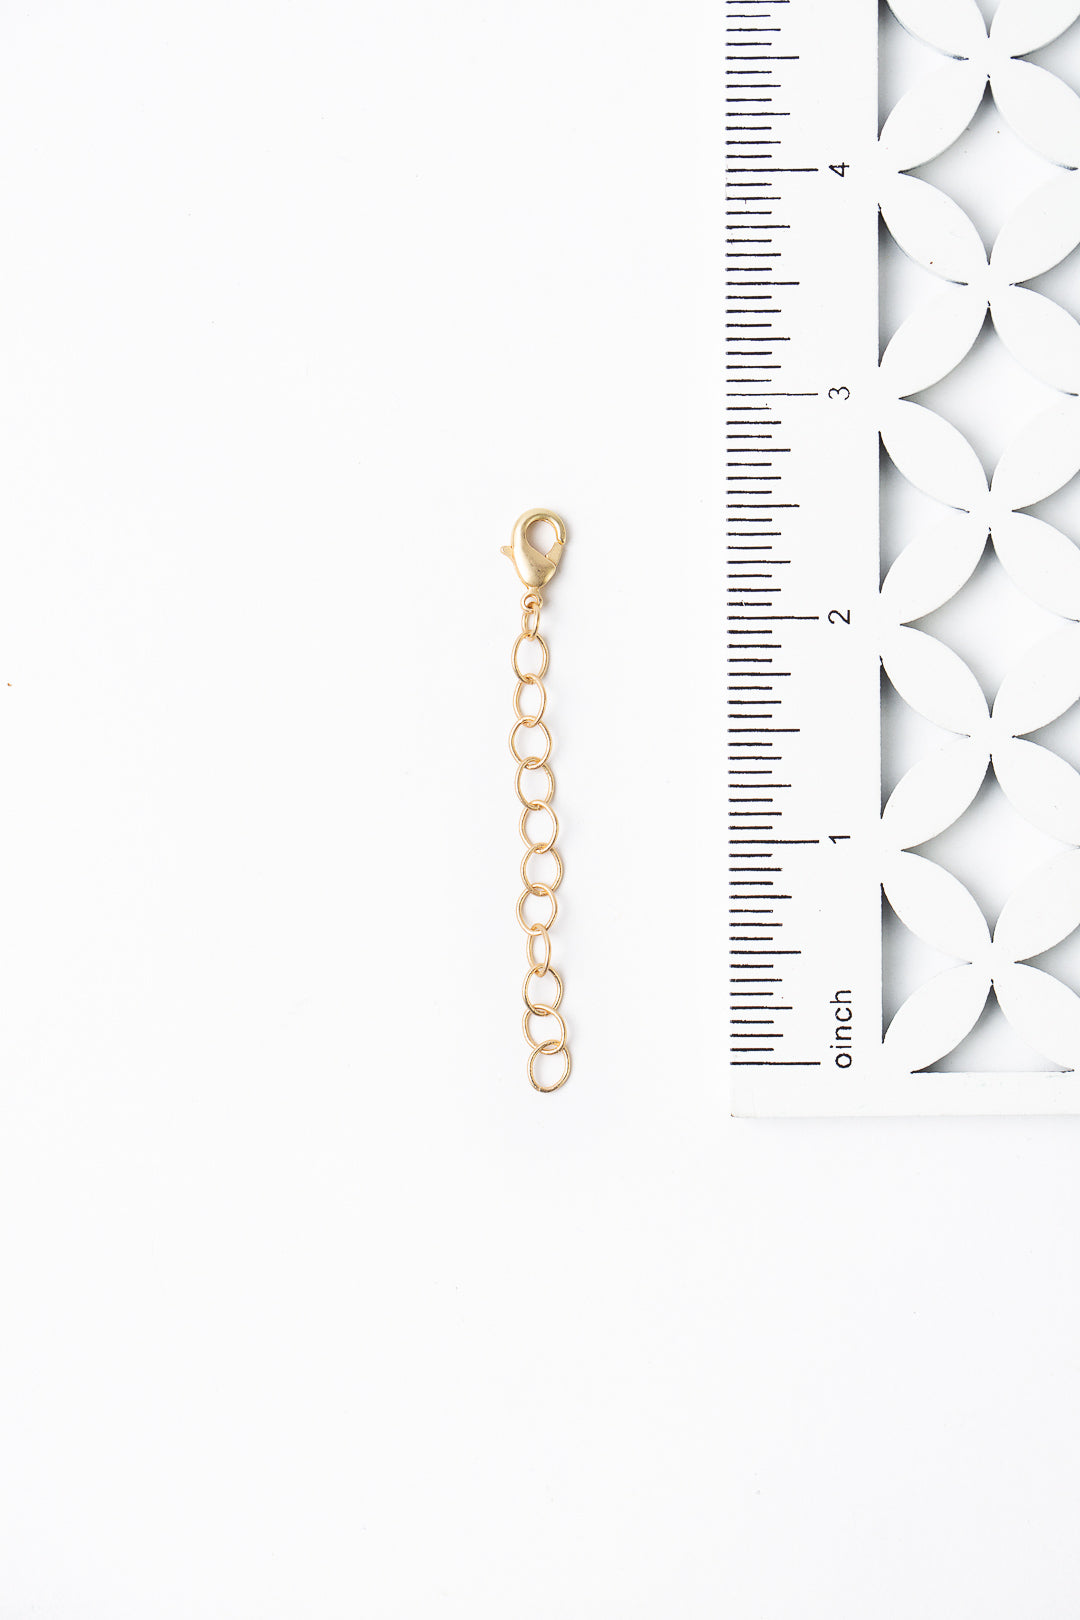 Matte Gold Plated Brass 2 Extender Chain – Anne Vaughan Designs